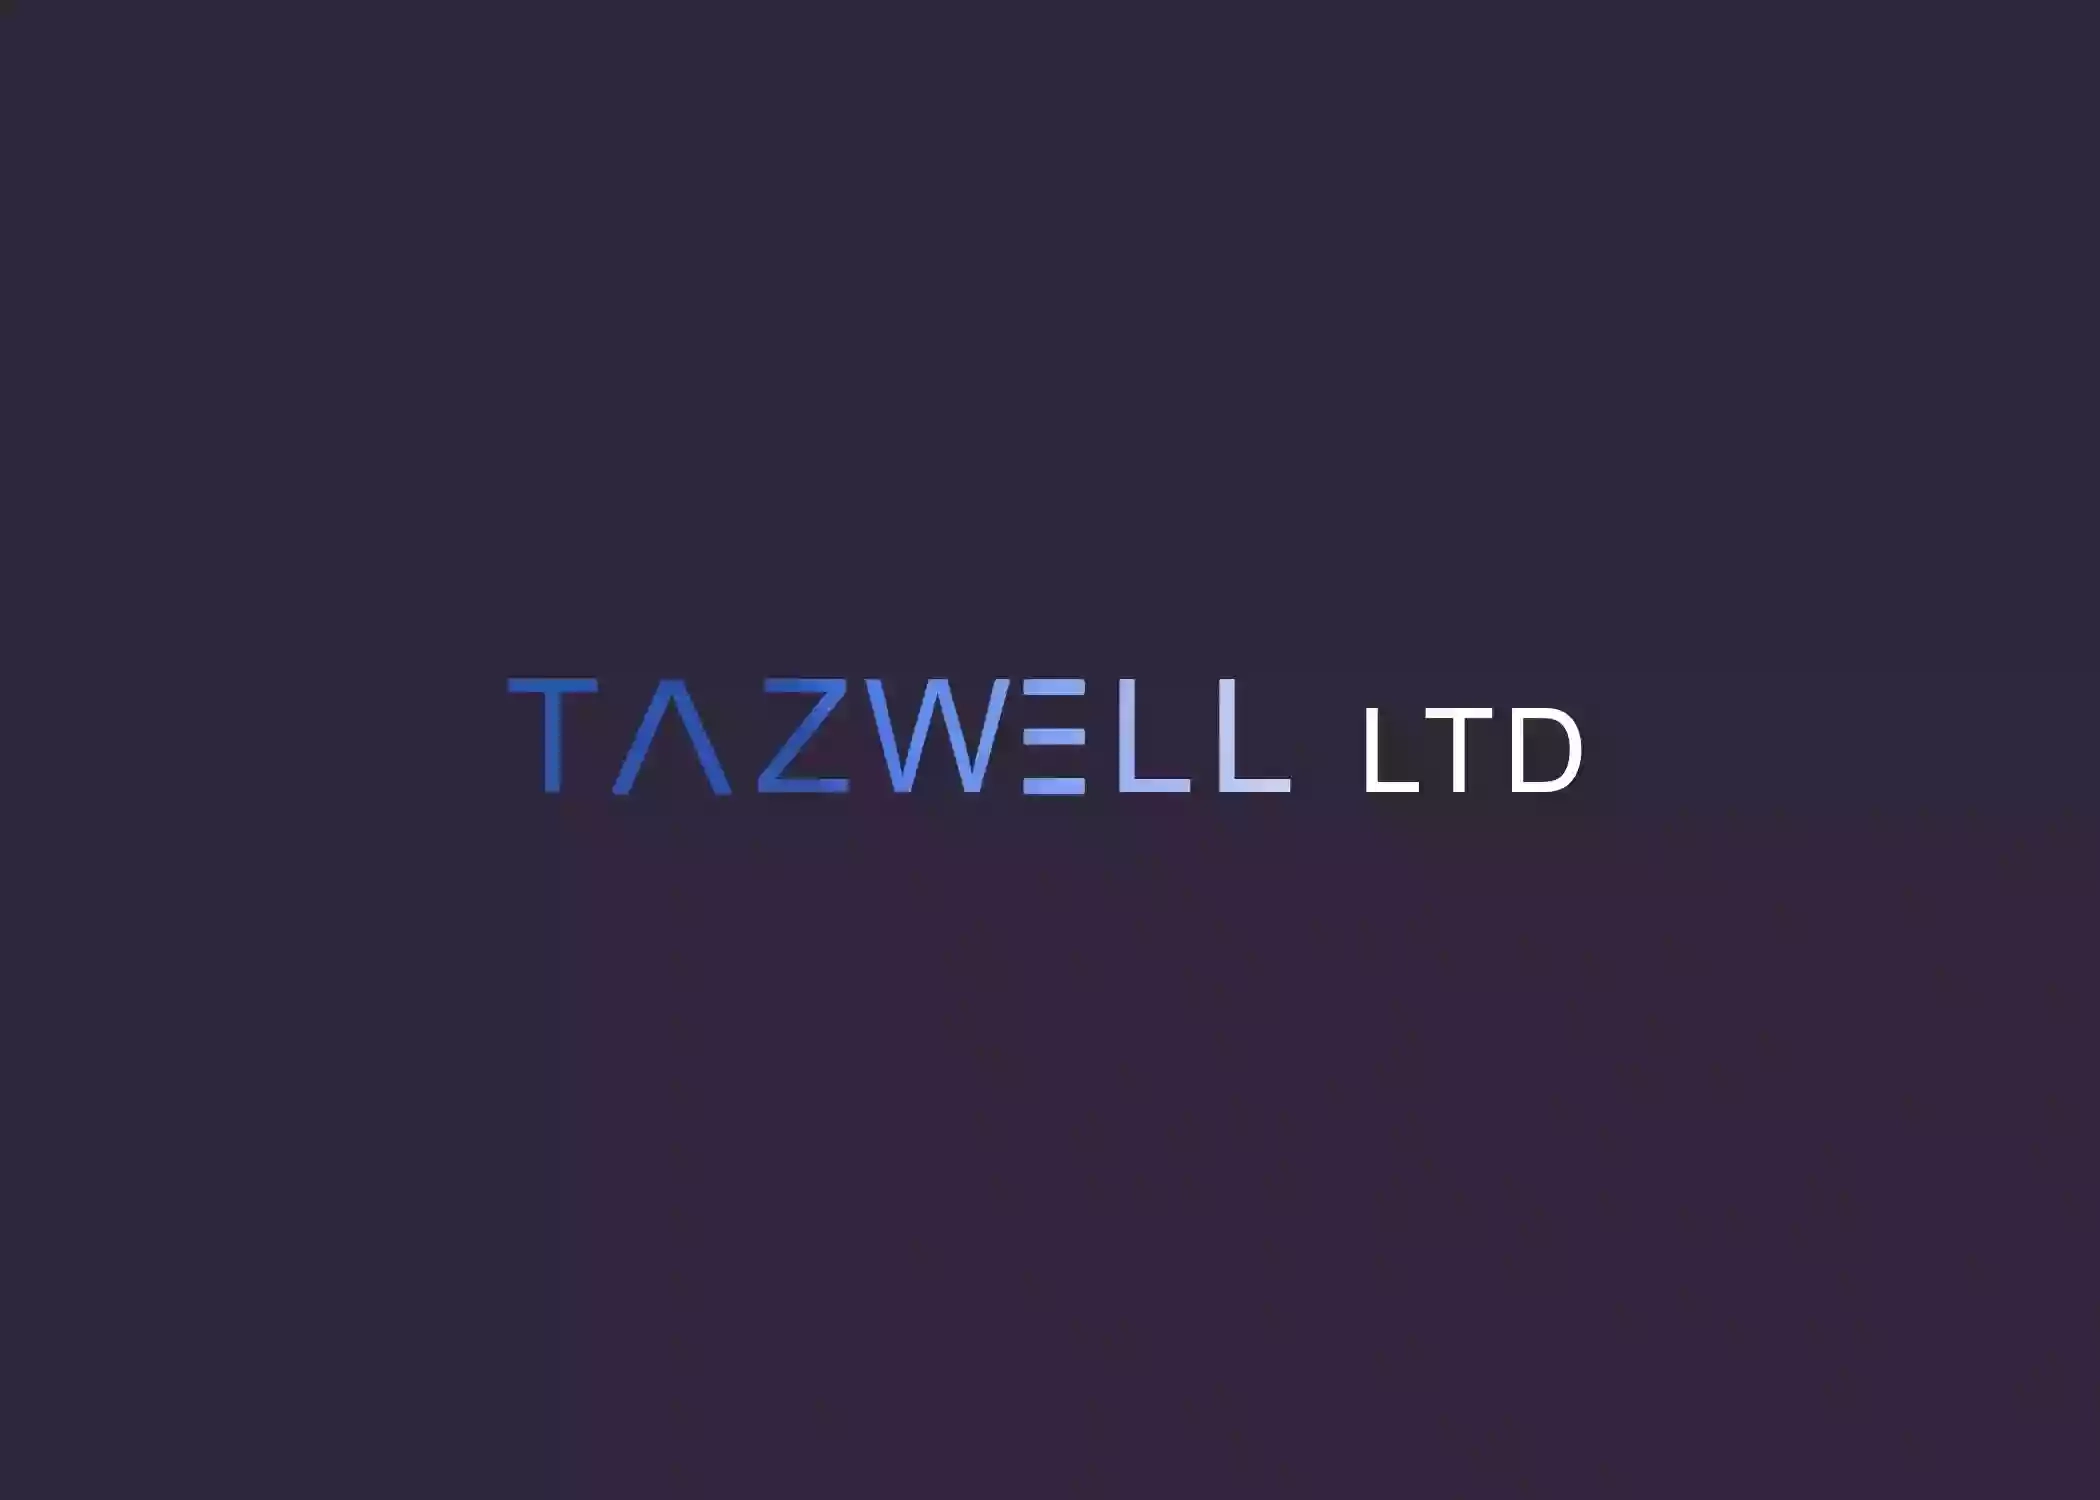 Tazwell Ltd